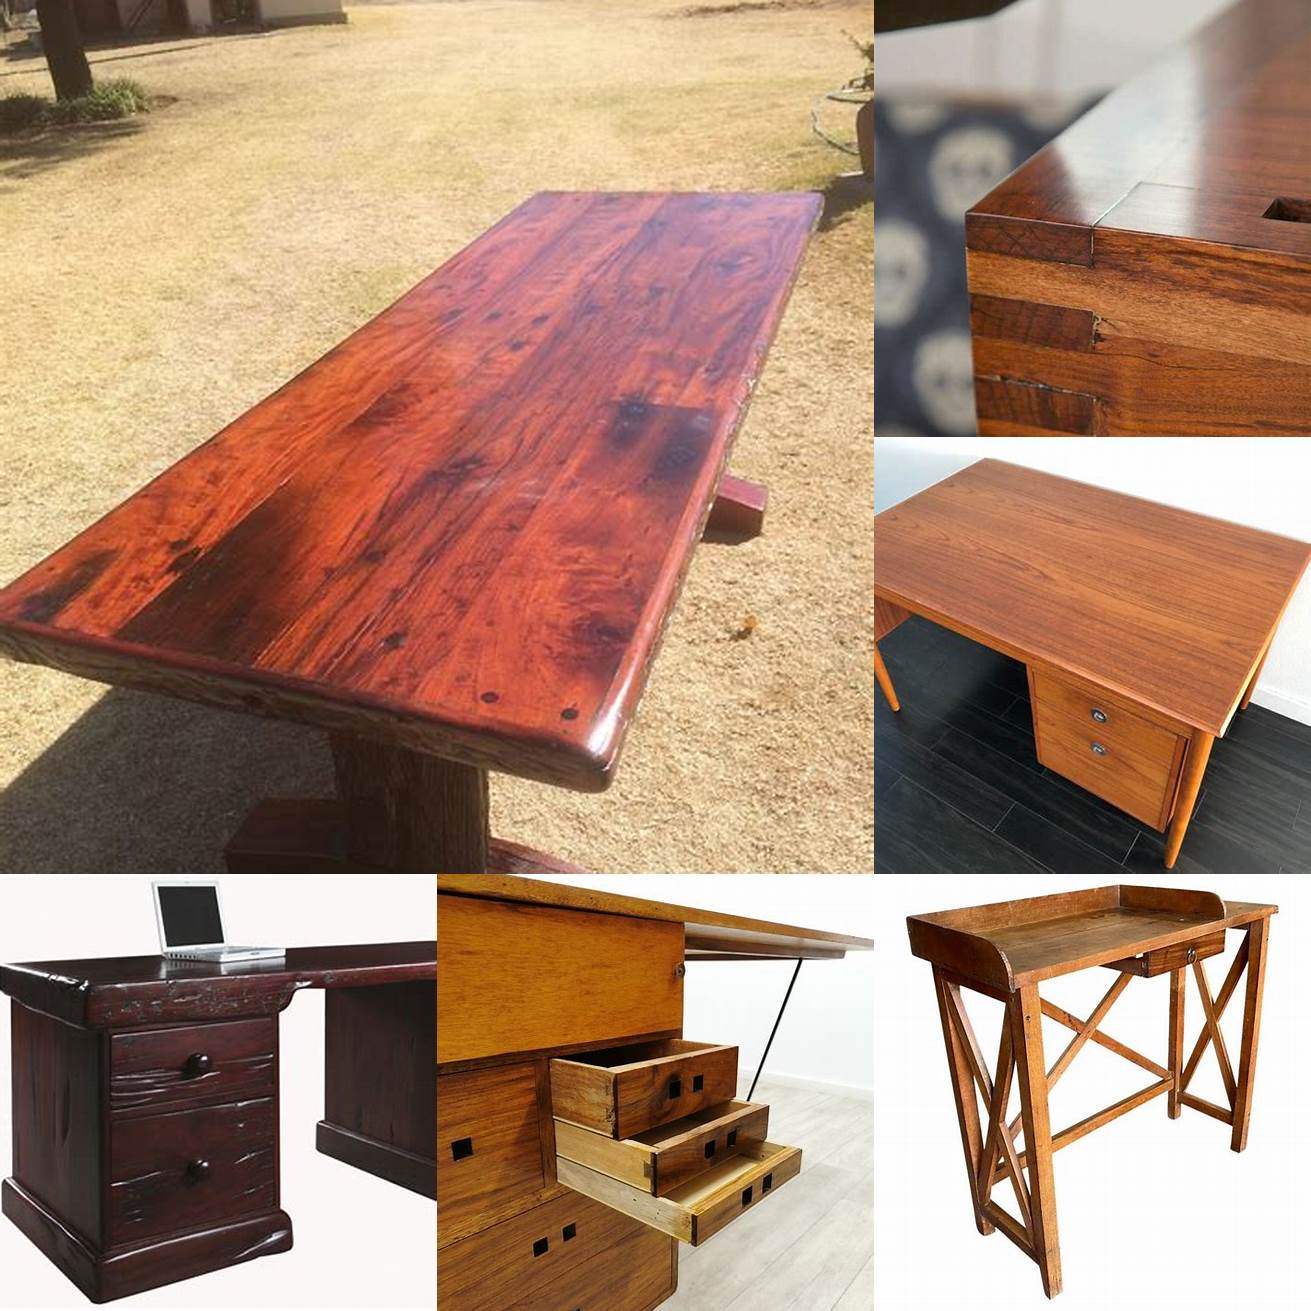 A desk made of Rhodesian teak